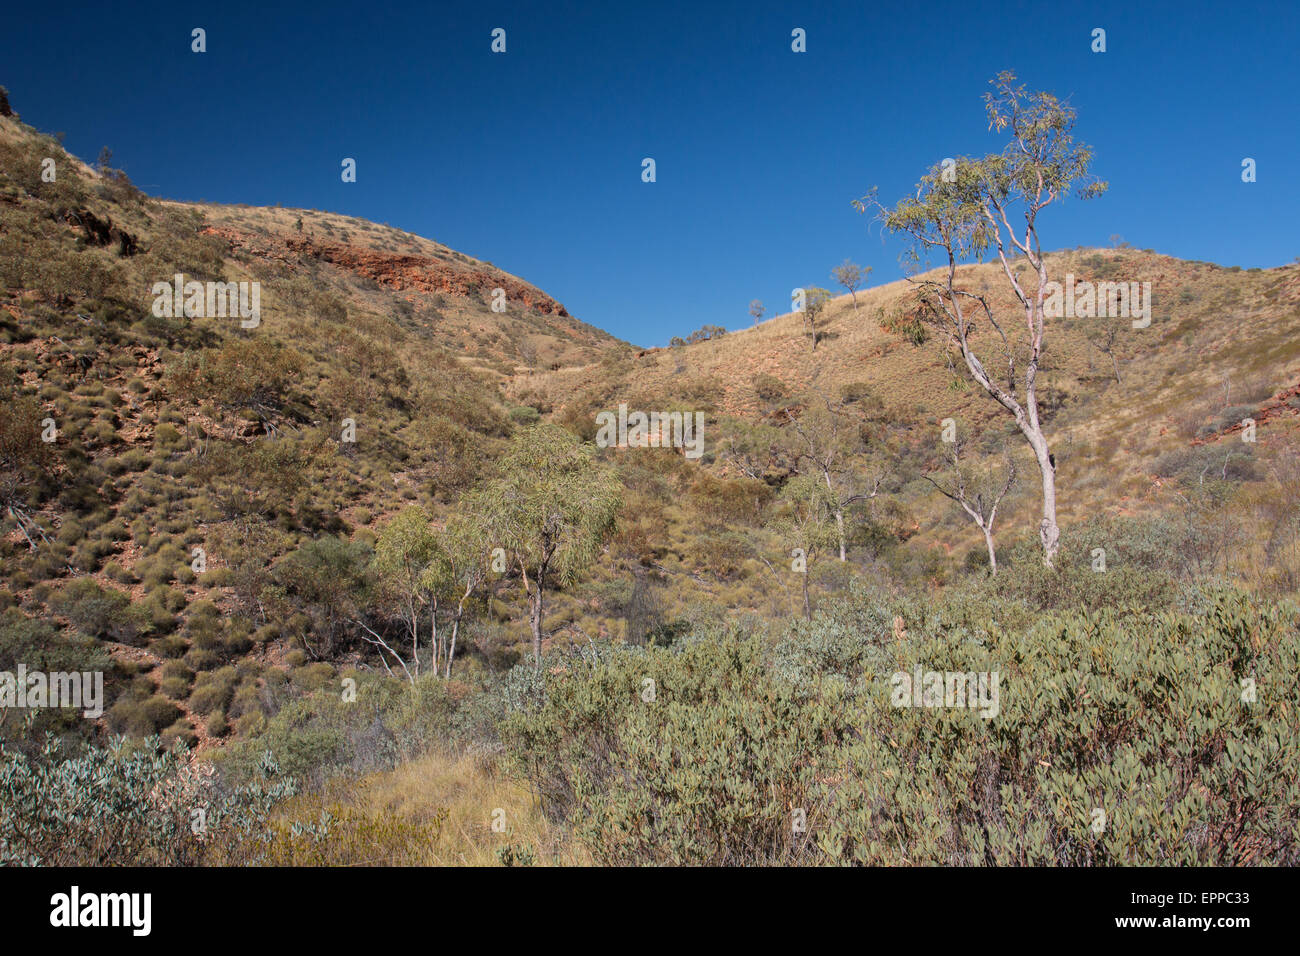 Vallée de végétation à Ormiston Gorge, dans une région aride des West MacDonnell Ranges, Territoire du Nord, Australie Banque D'Images